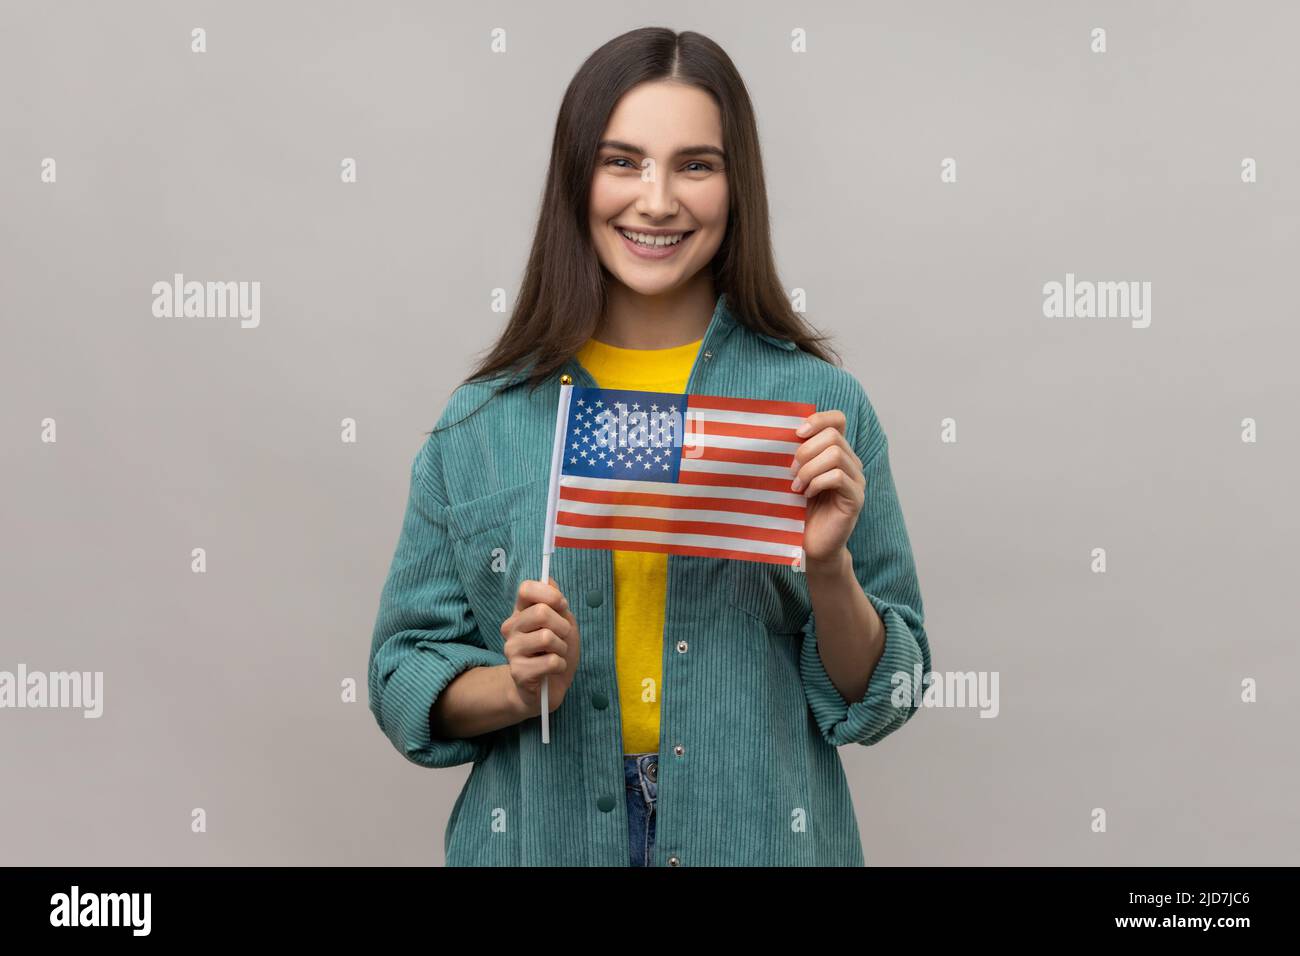 Ritratto di giovane donna felice soddisfatto in piedi e tenendo bandiera americana, festeggiamenti nazionali, indossando giacca casual stile. Studio interno girato isolato su sfondo grigio. Foto Stock